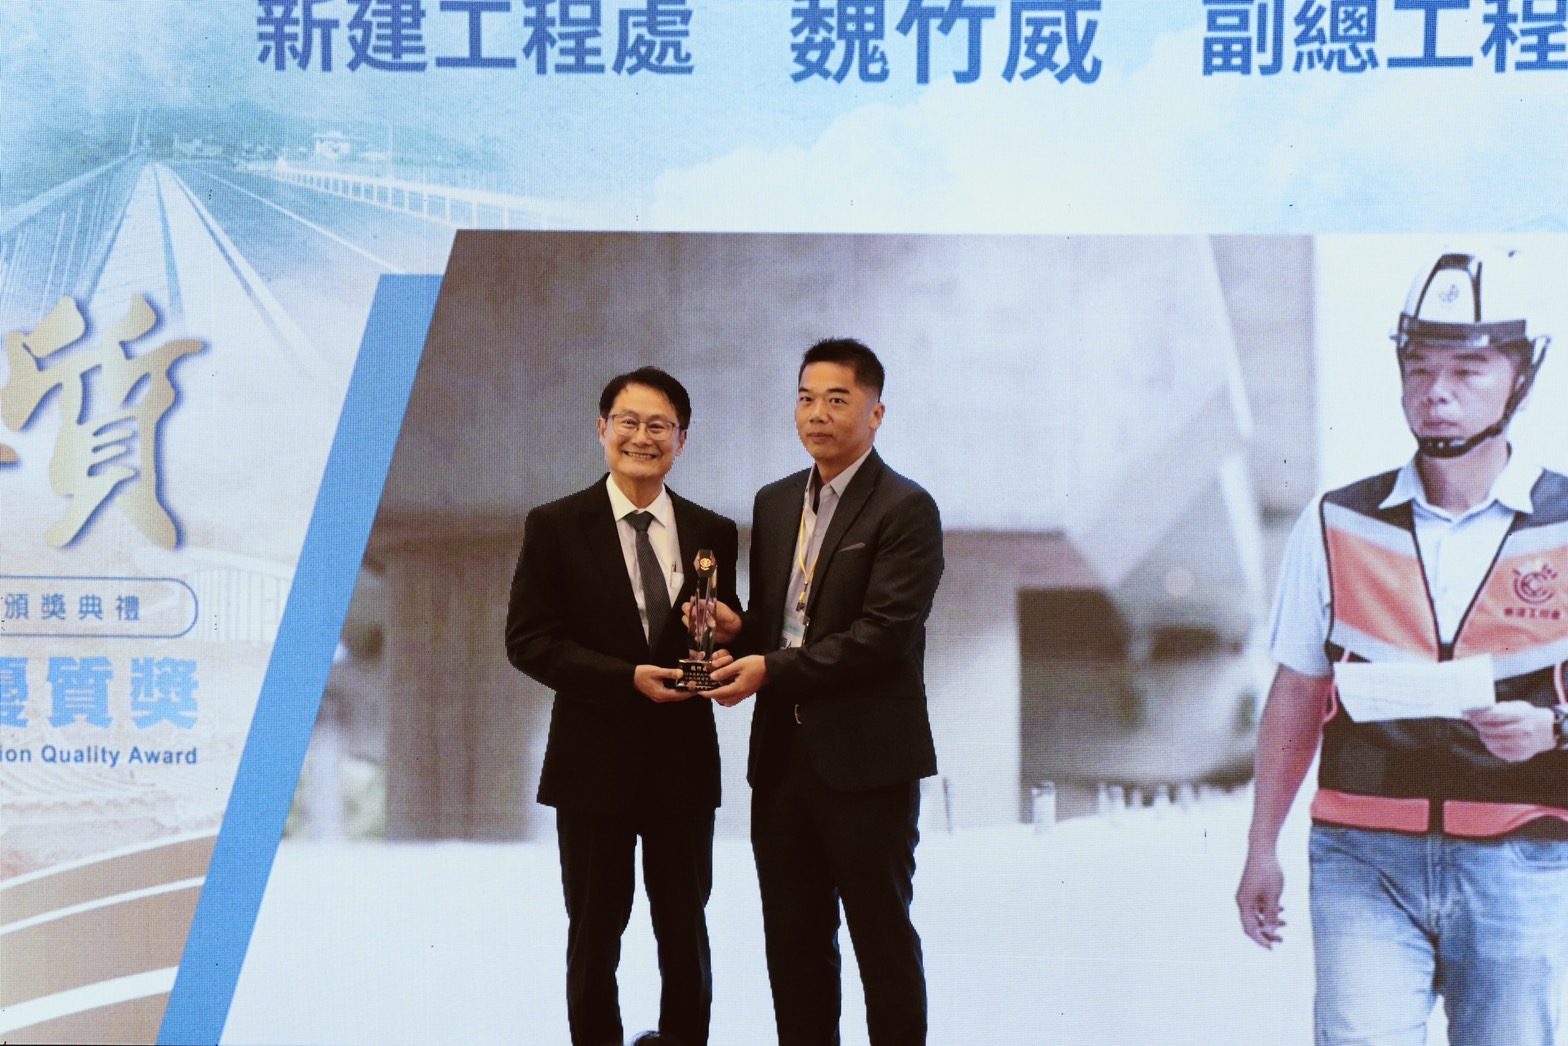 新工處副總工程司魏竹威(右)贏得「個人貢獻獎」殊榮，今日由陳副市長(左)頒發此殊榮。